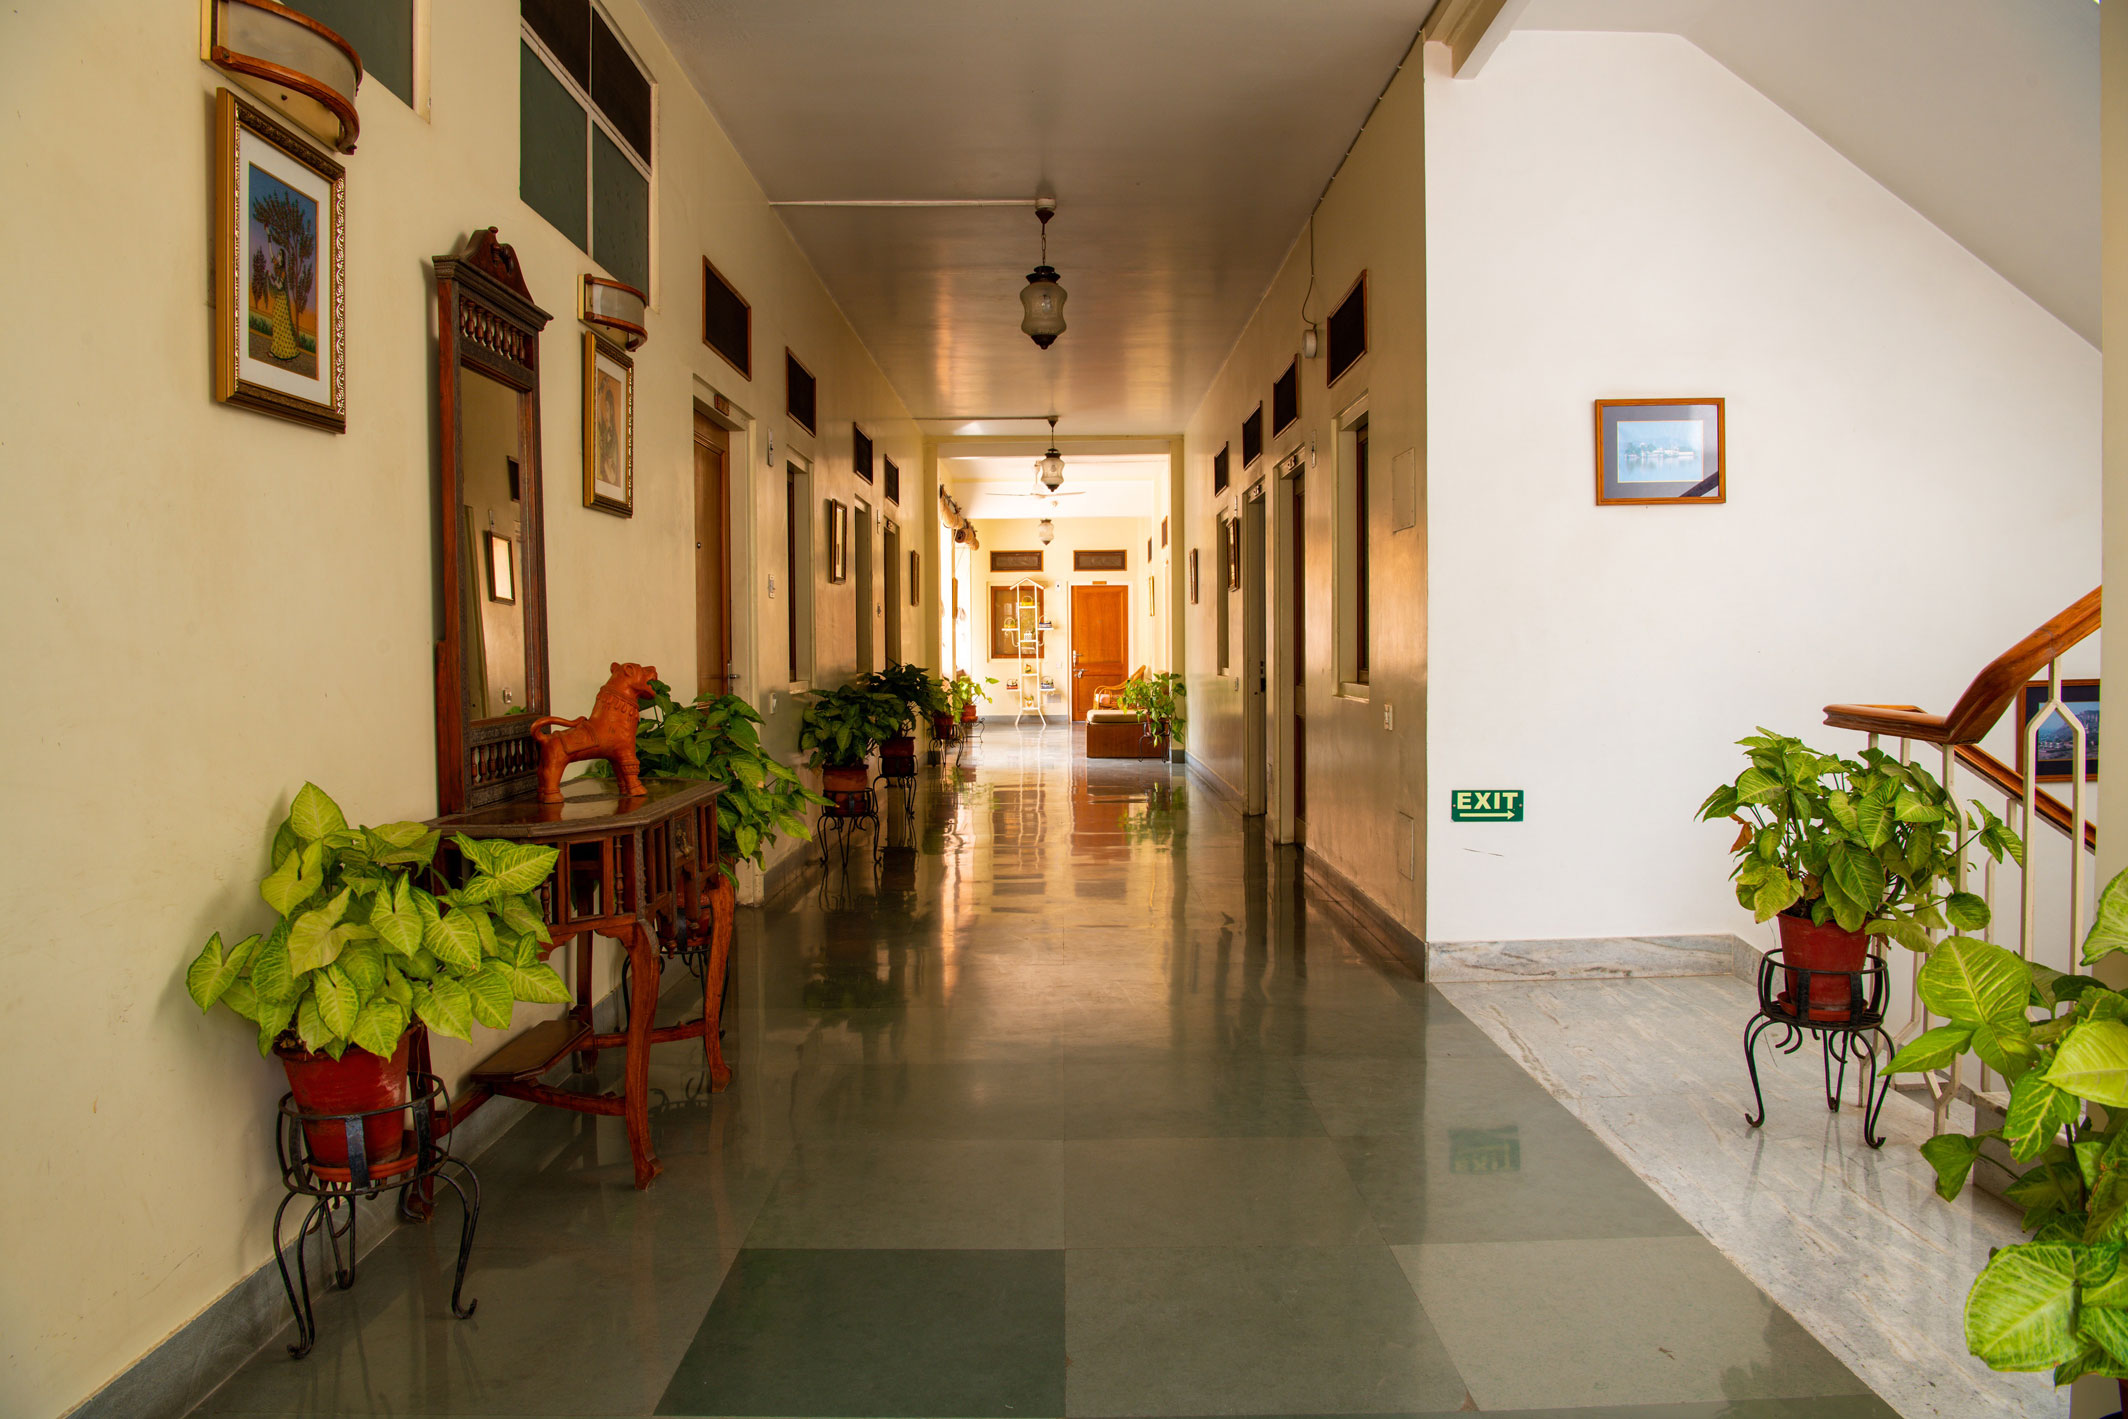 2nd-floor-corridor-with-gemstone-paintings